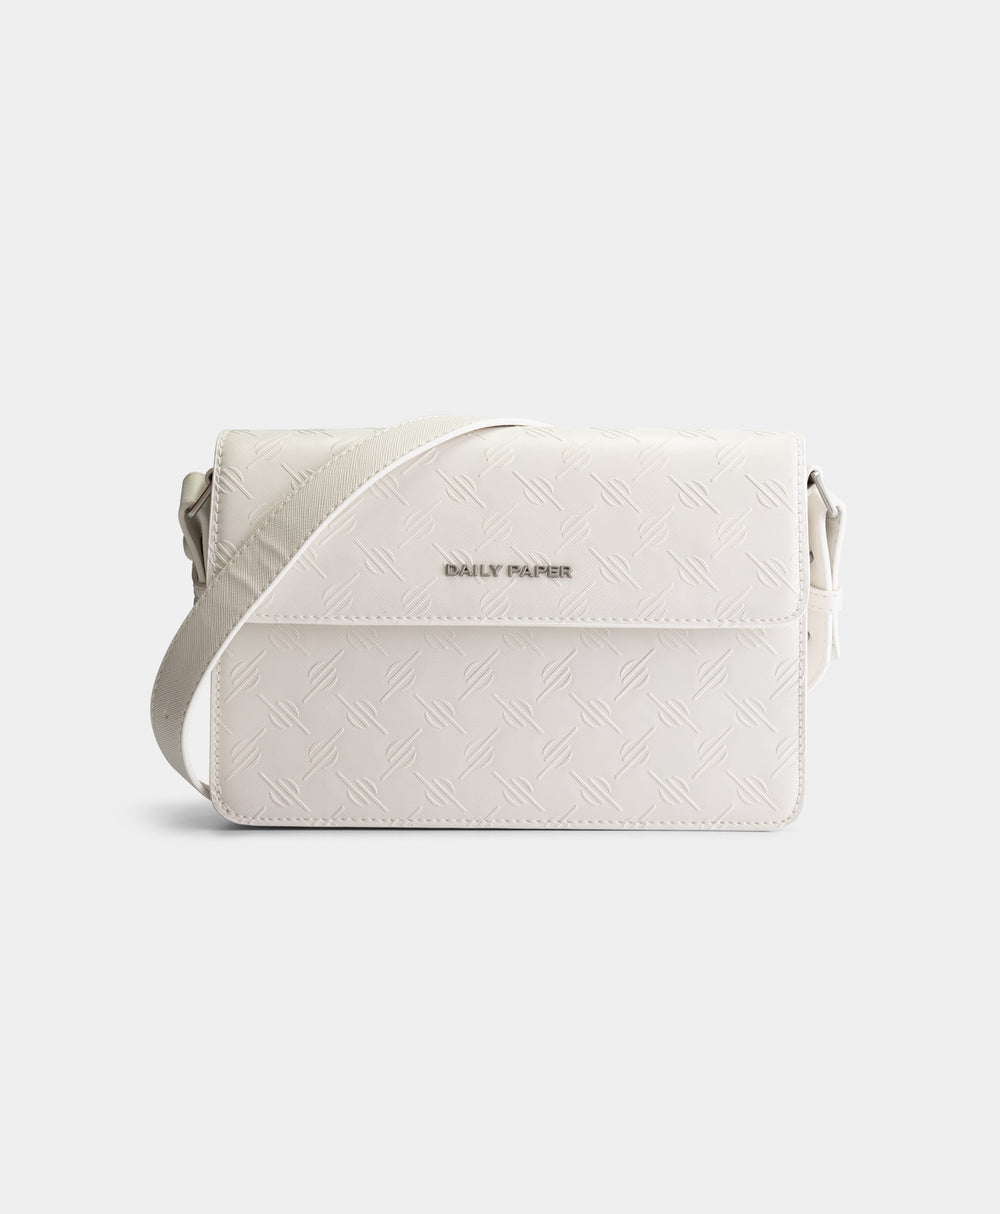 DP - White Meru Monogram Bag - Packshot - Front